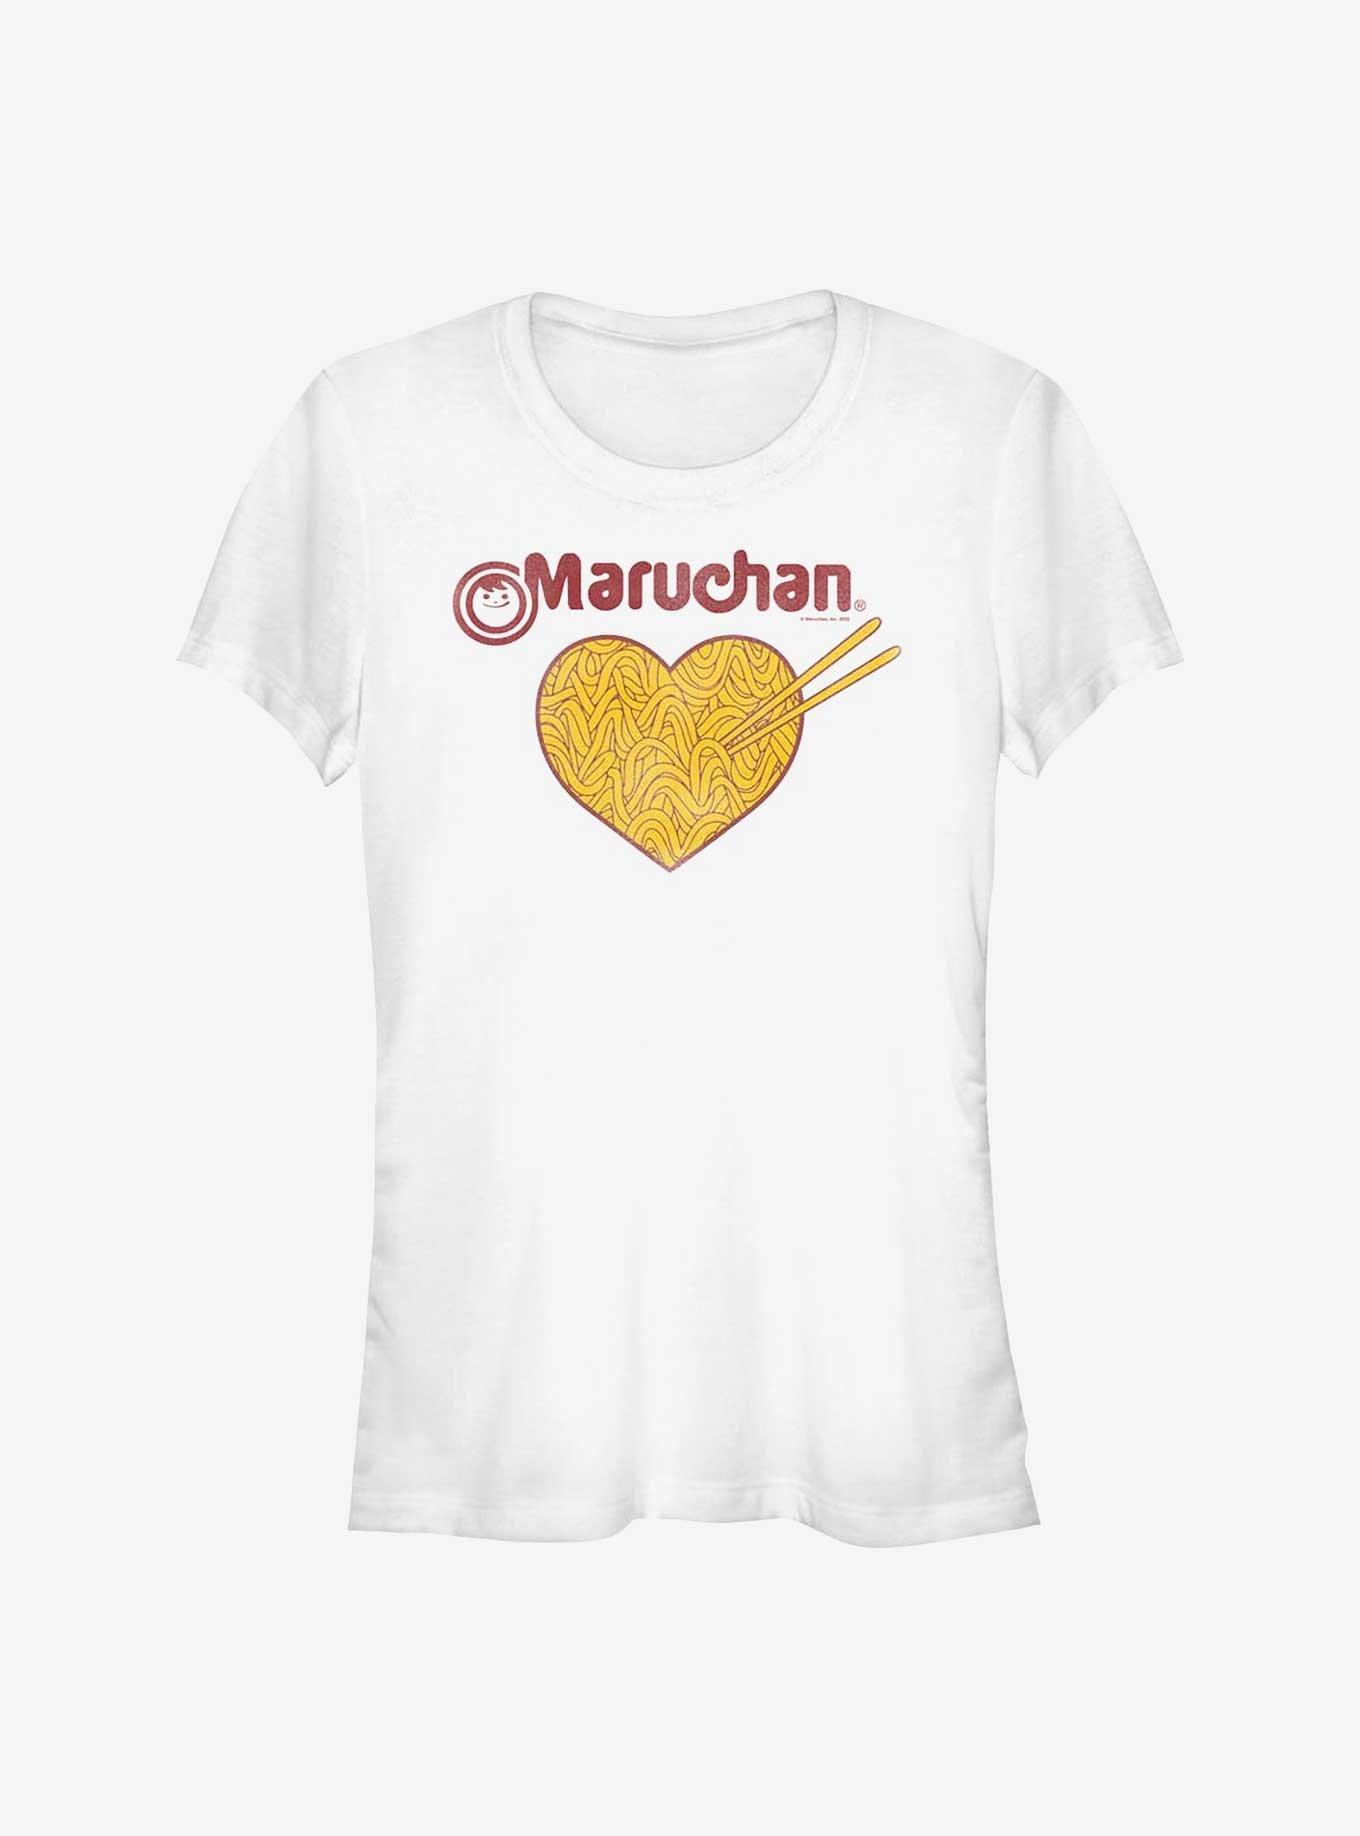 Maruchan Noodles Heart Girls T-Shirt